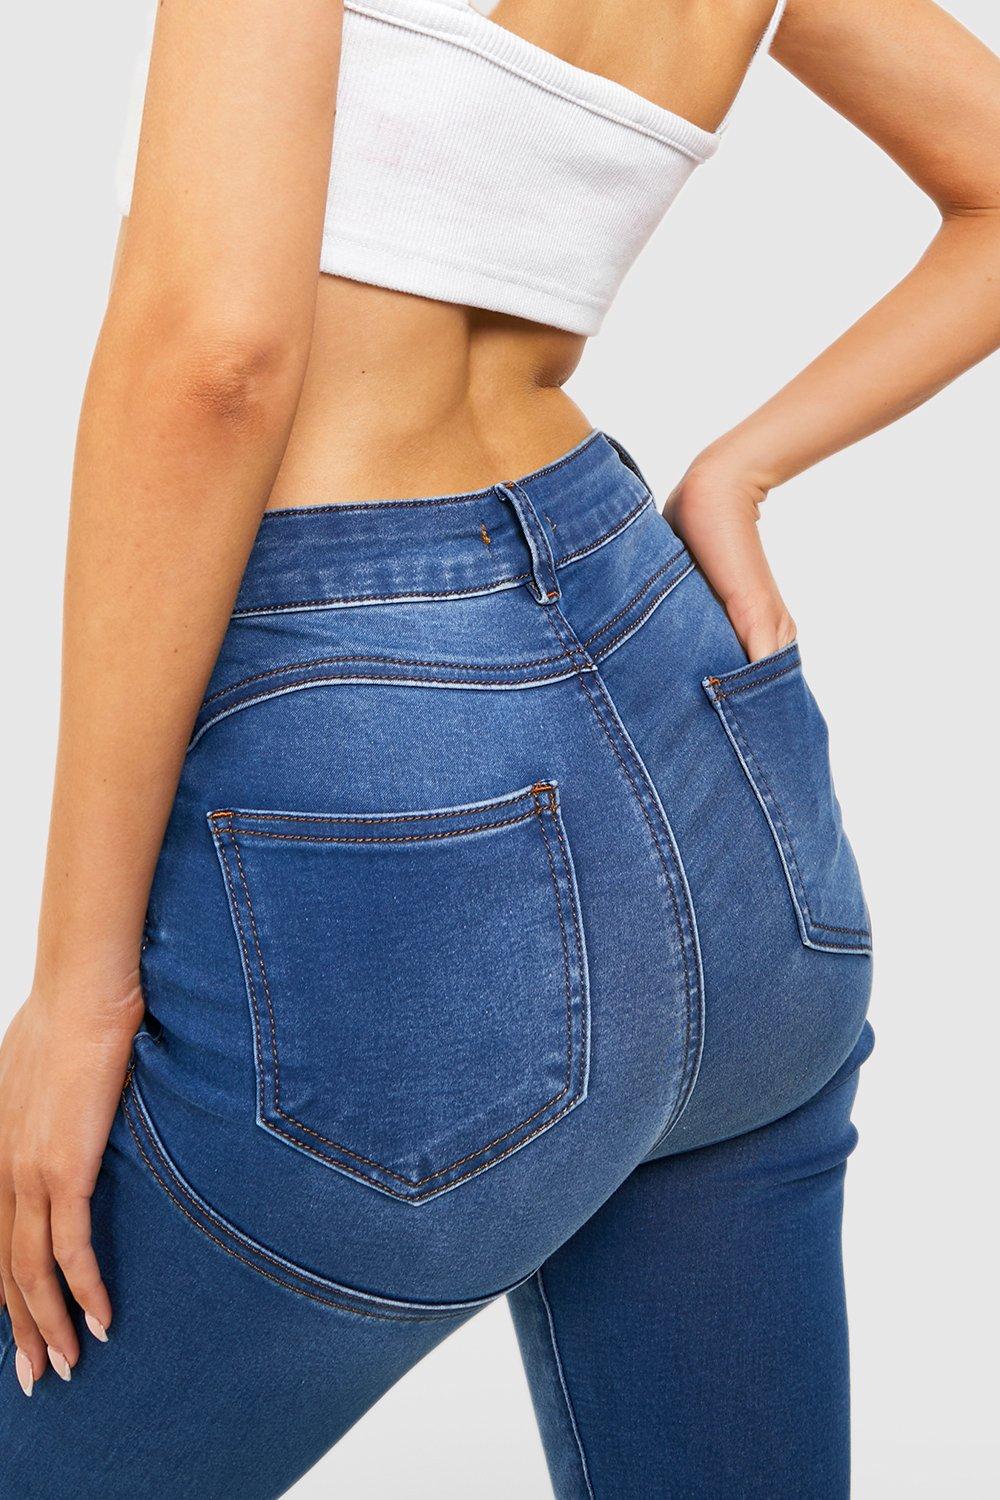 Welkom Idool Garantie high waisted bum shaping jeans serie liberaal benzine